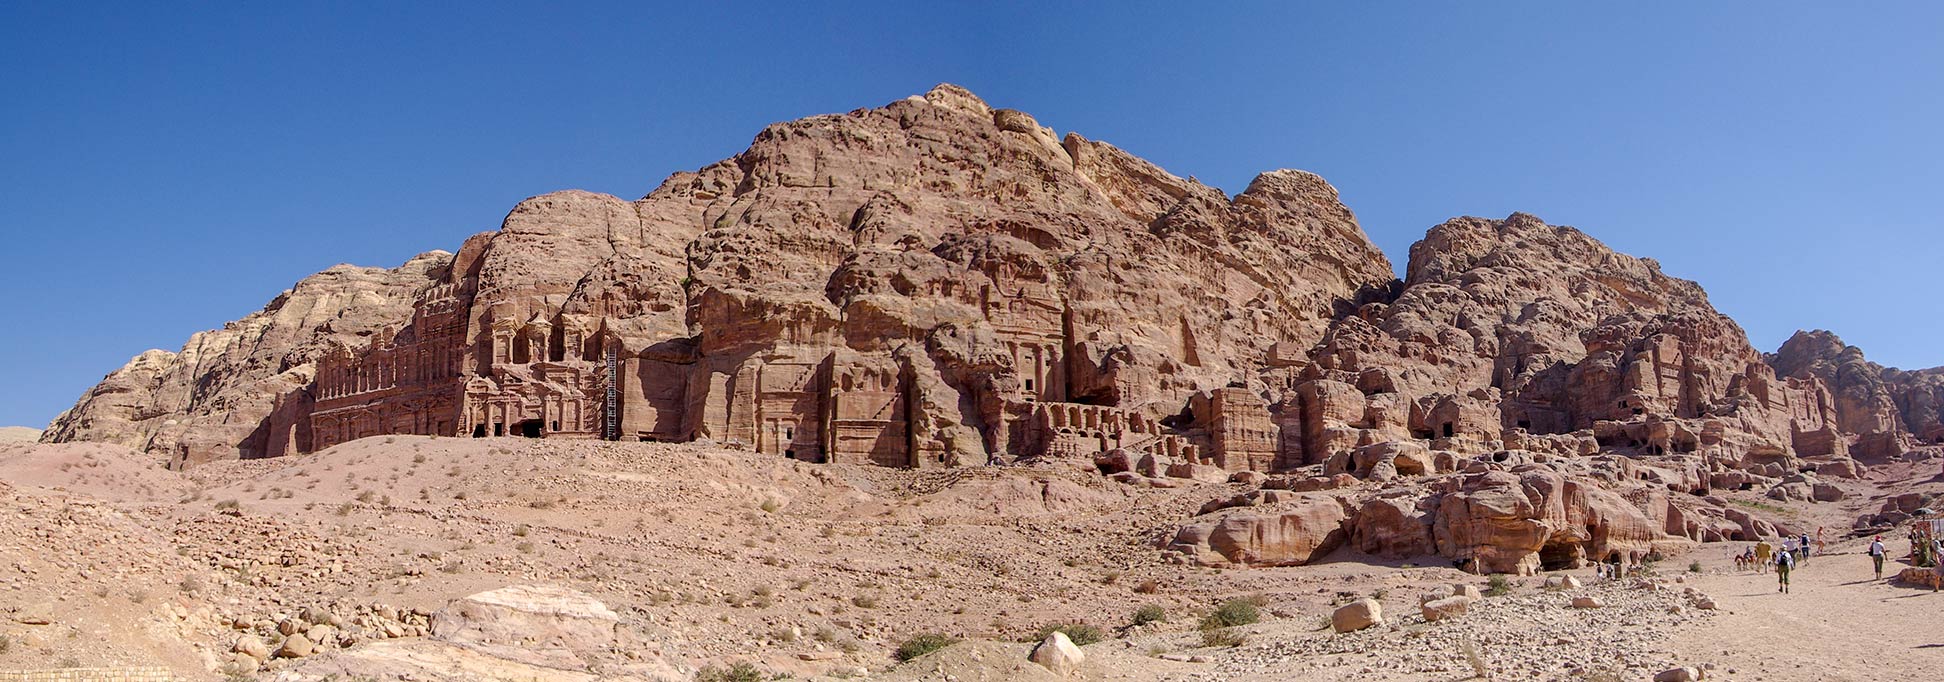 The Kings Wall in Petra, Jordan